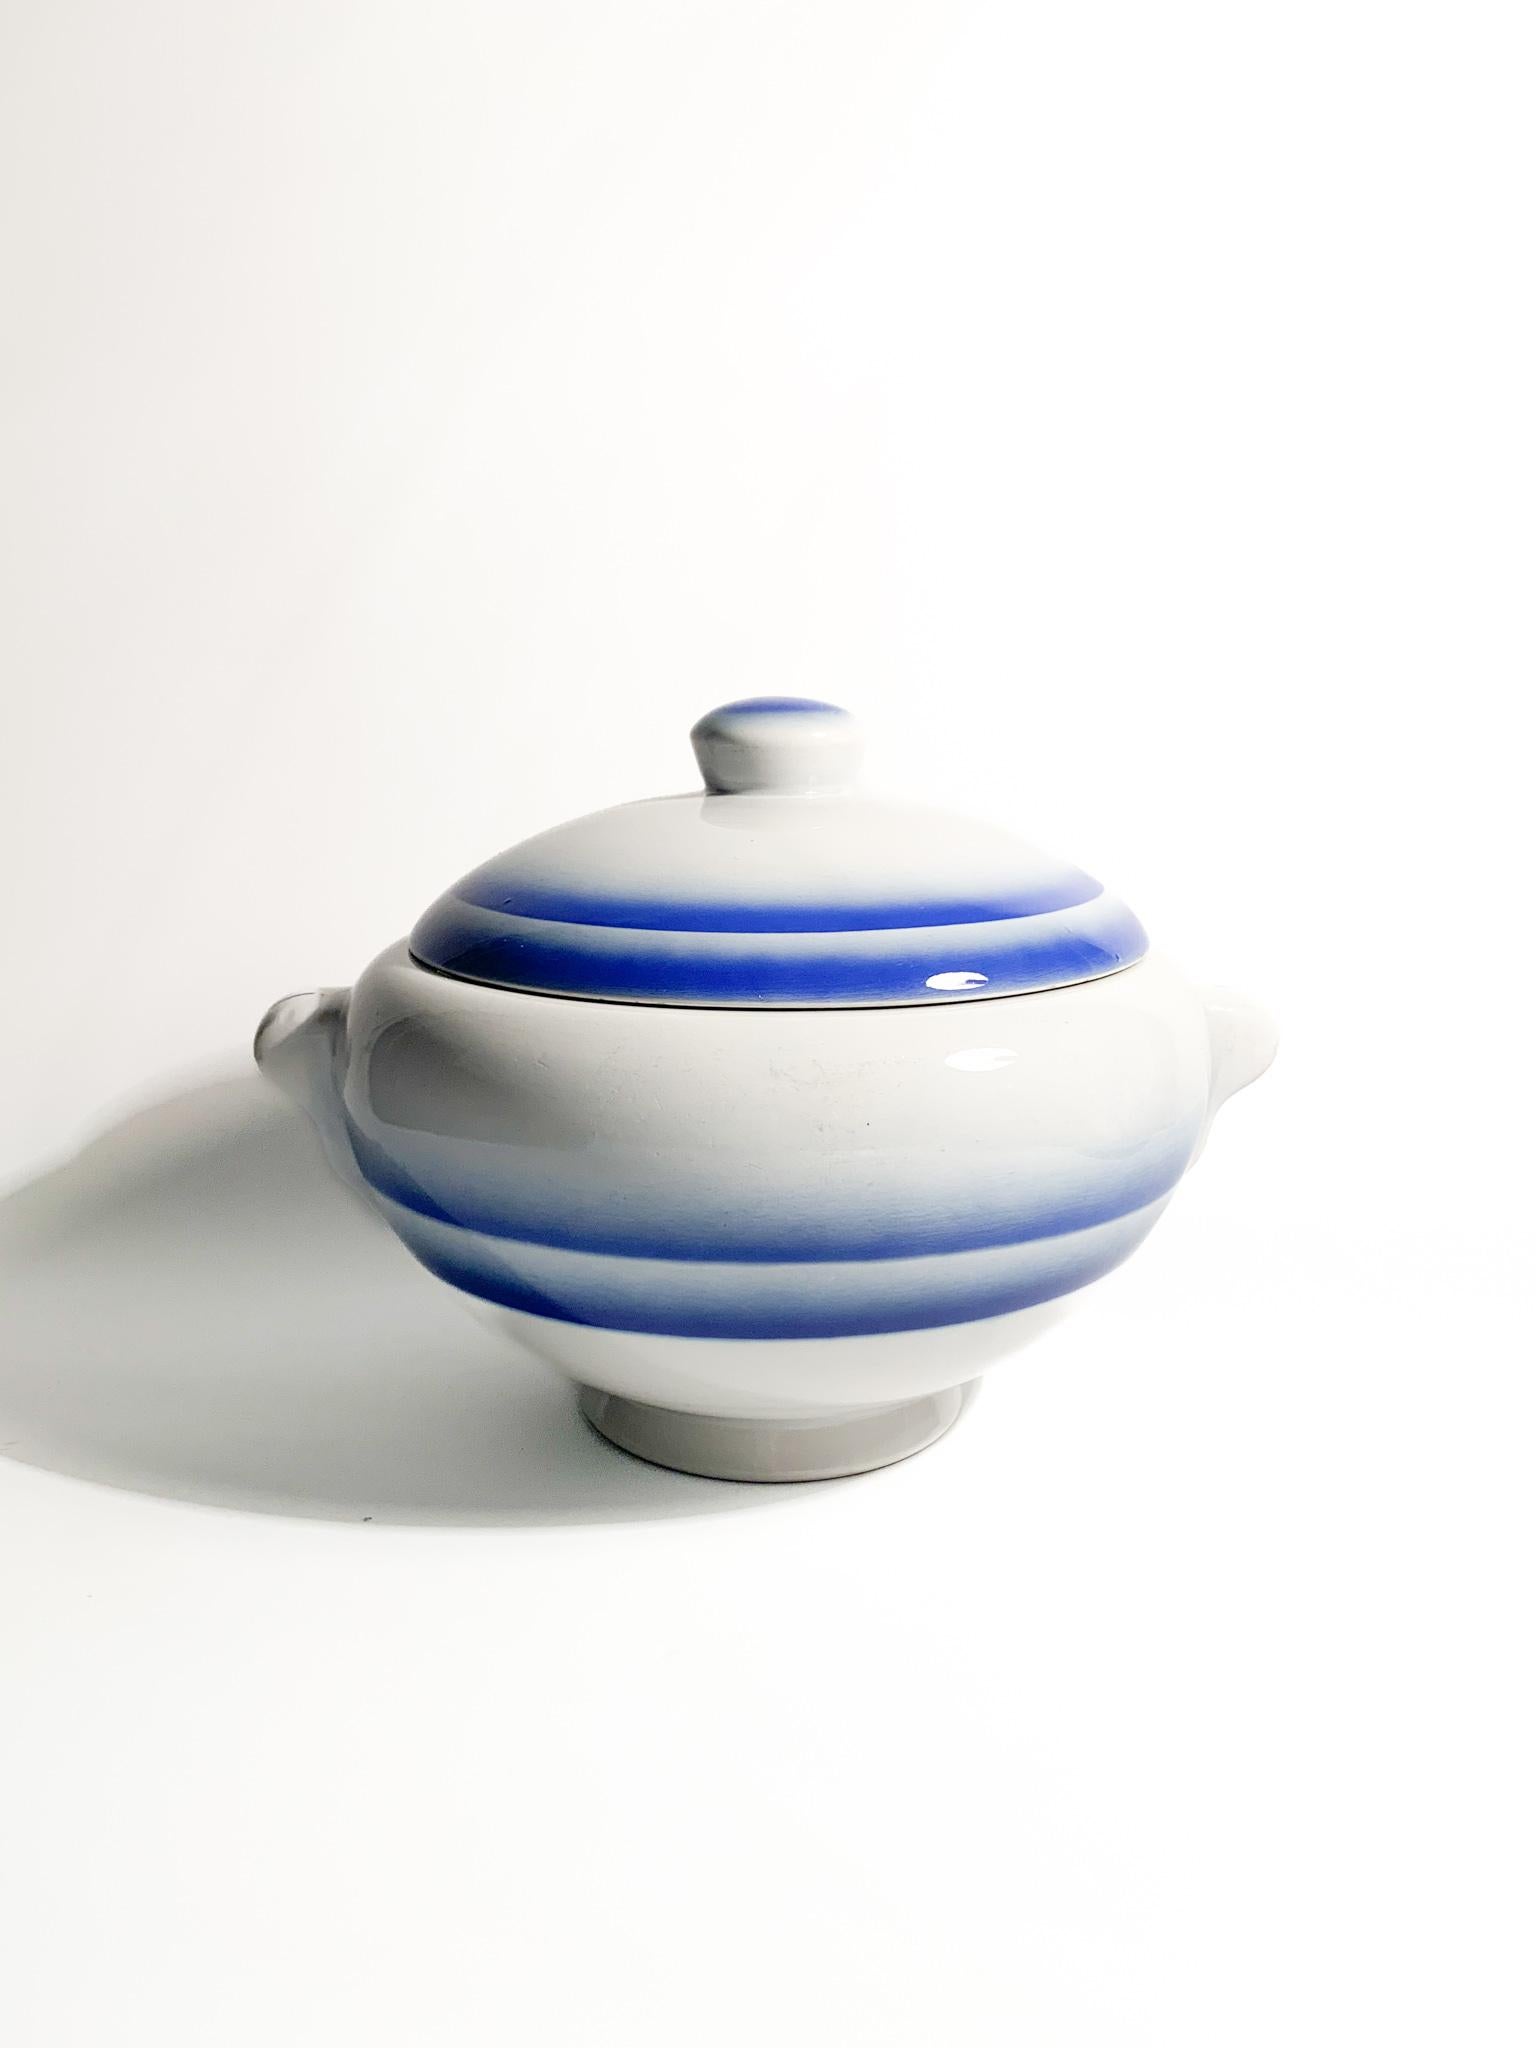 Centre de table / soupière en céramique blanche et rayures bleues, fabriqué par Galvani Pordenone dans les années 1950.

Ø 25 cm h 16 cm

L'usine de céramique 